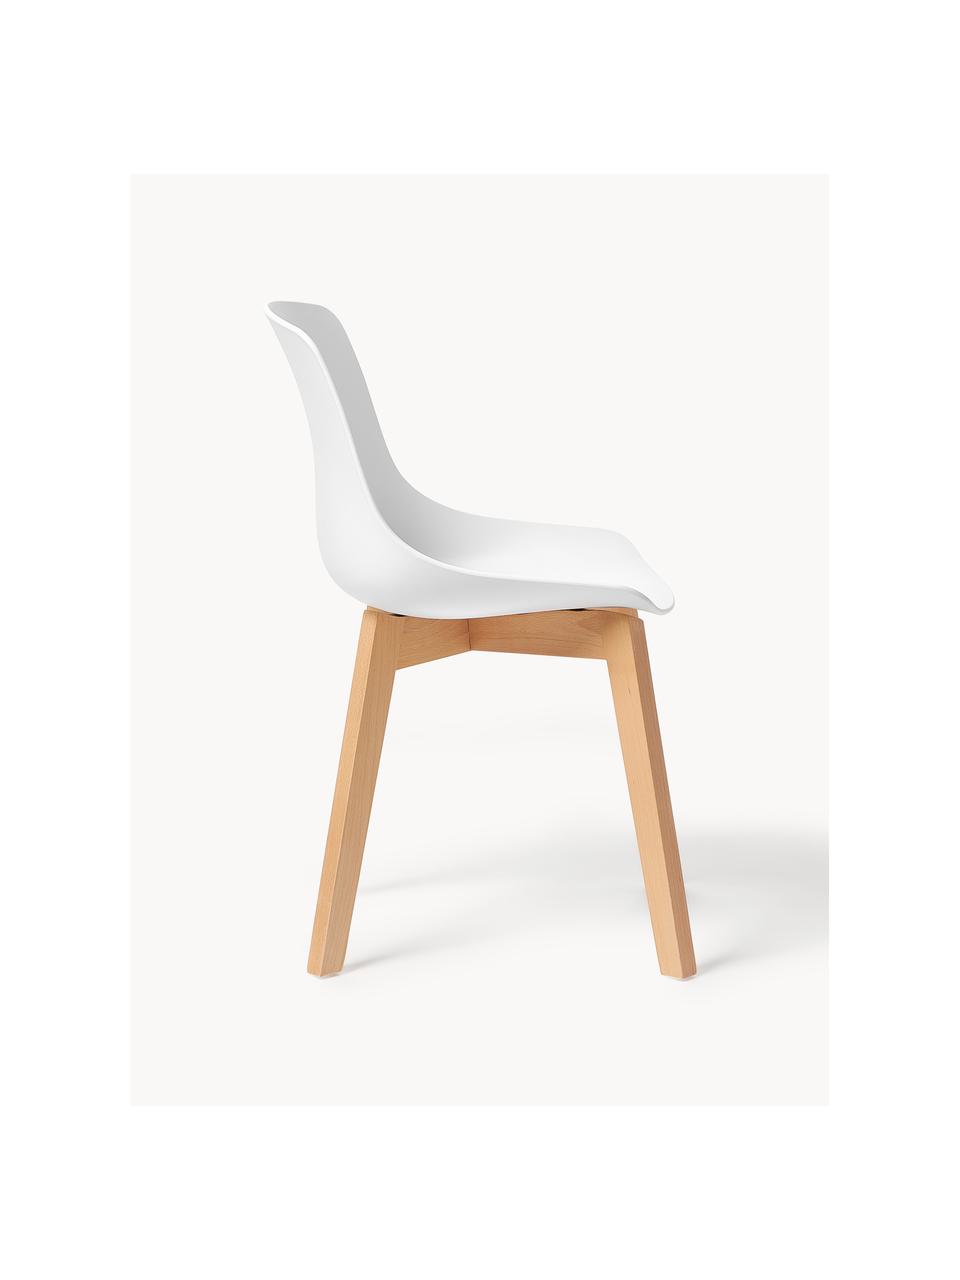 Židle z umělé hmoty s dřevěnými nohami Dave, 2 ks, Bílá, bukové dřevo, Š 46 cm, H 52 cm